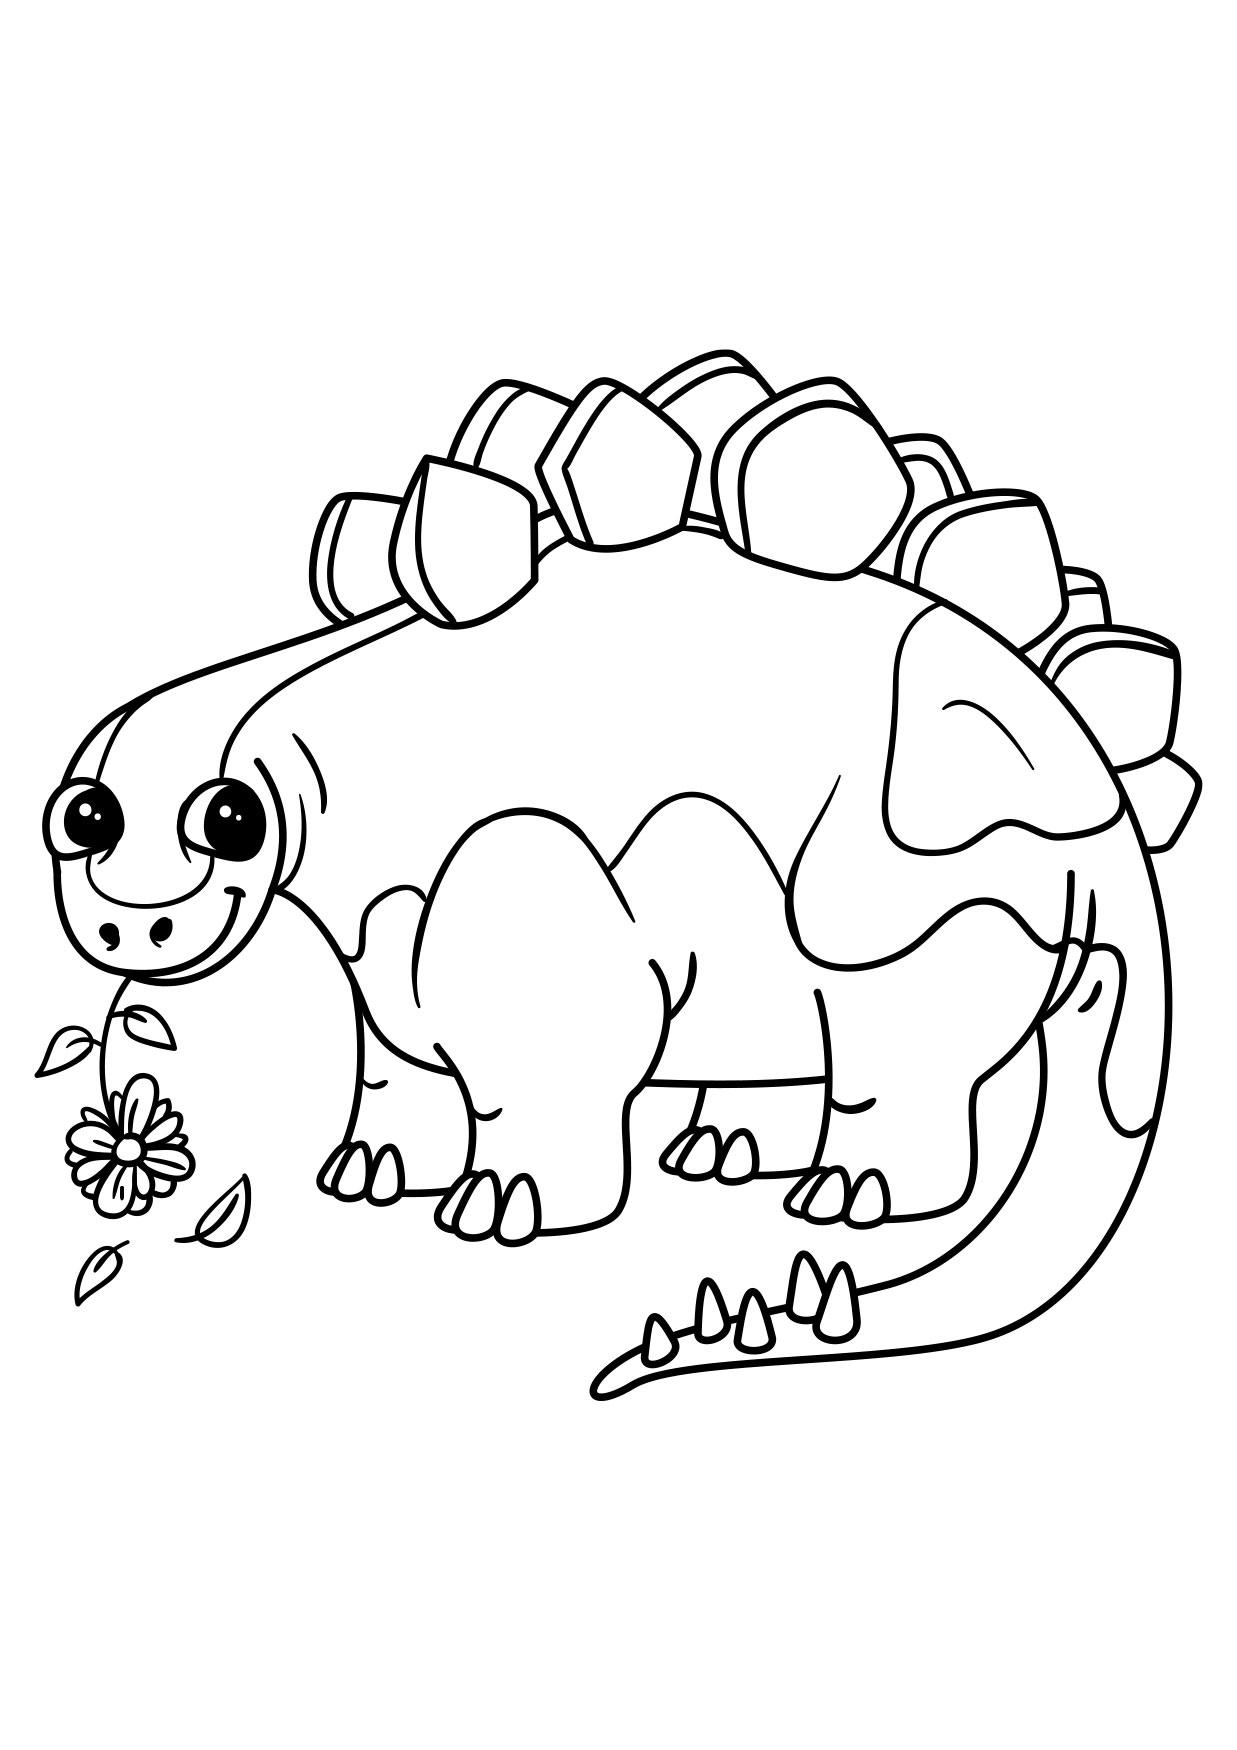 Disegno da colorare Stegosauro con fiore - Disegni Da Colorare E